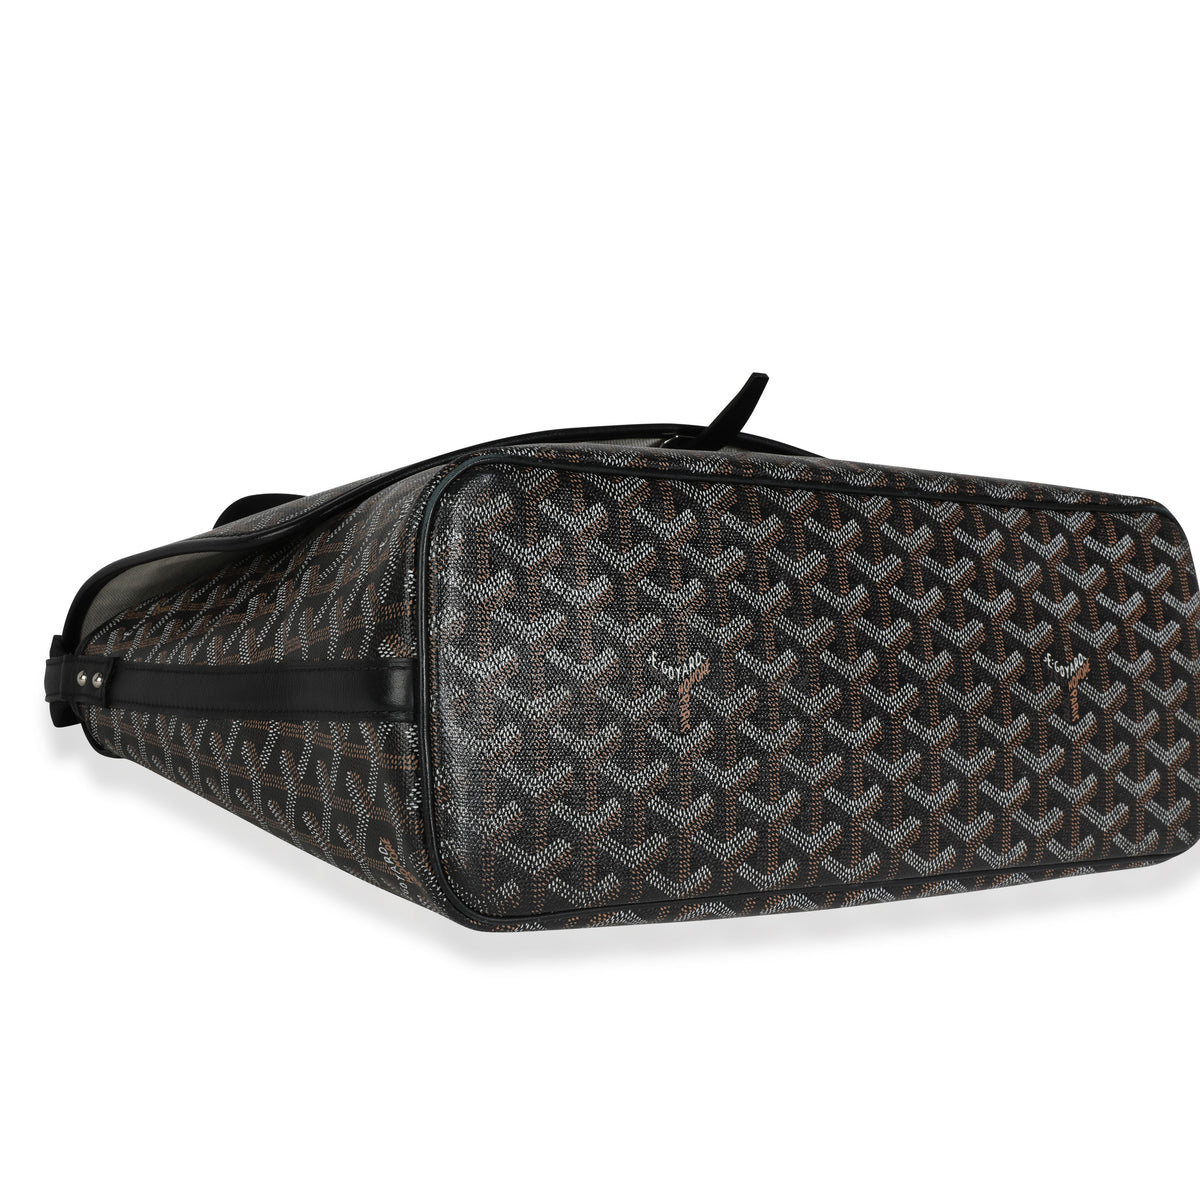 GoyardOfficial on X: Black goyardine and leather golf bag